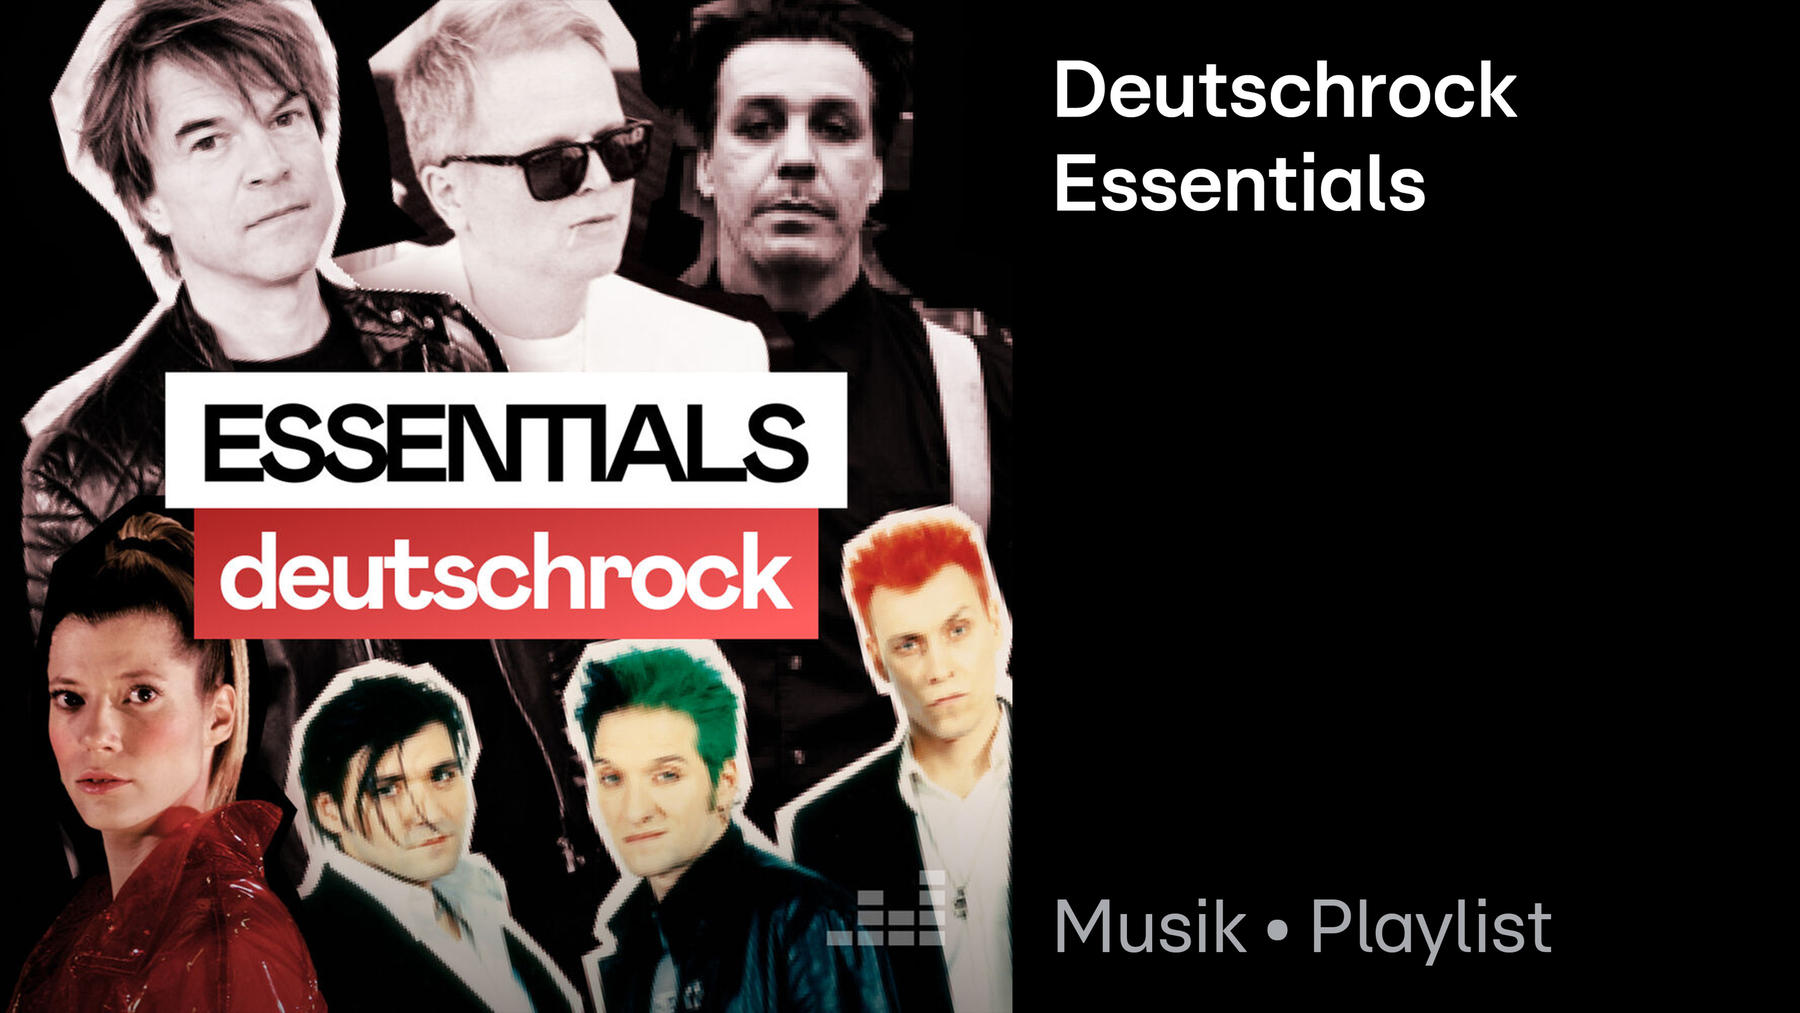 Deutschrock Essentials